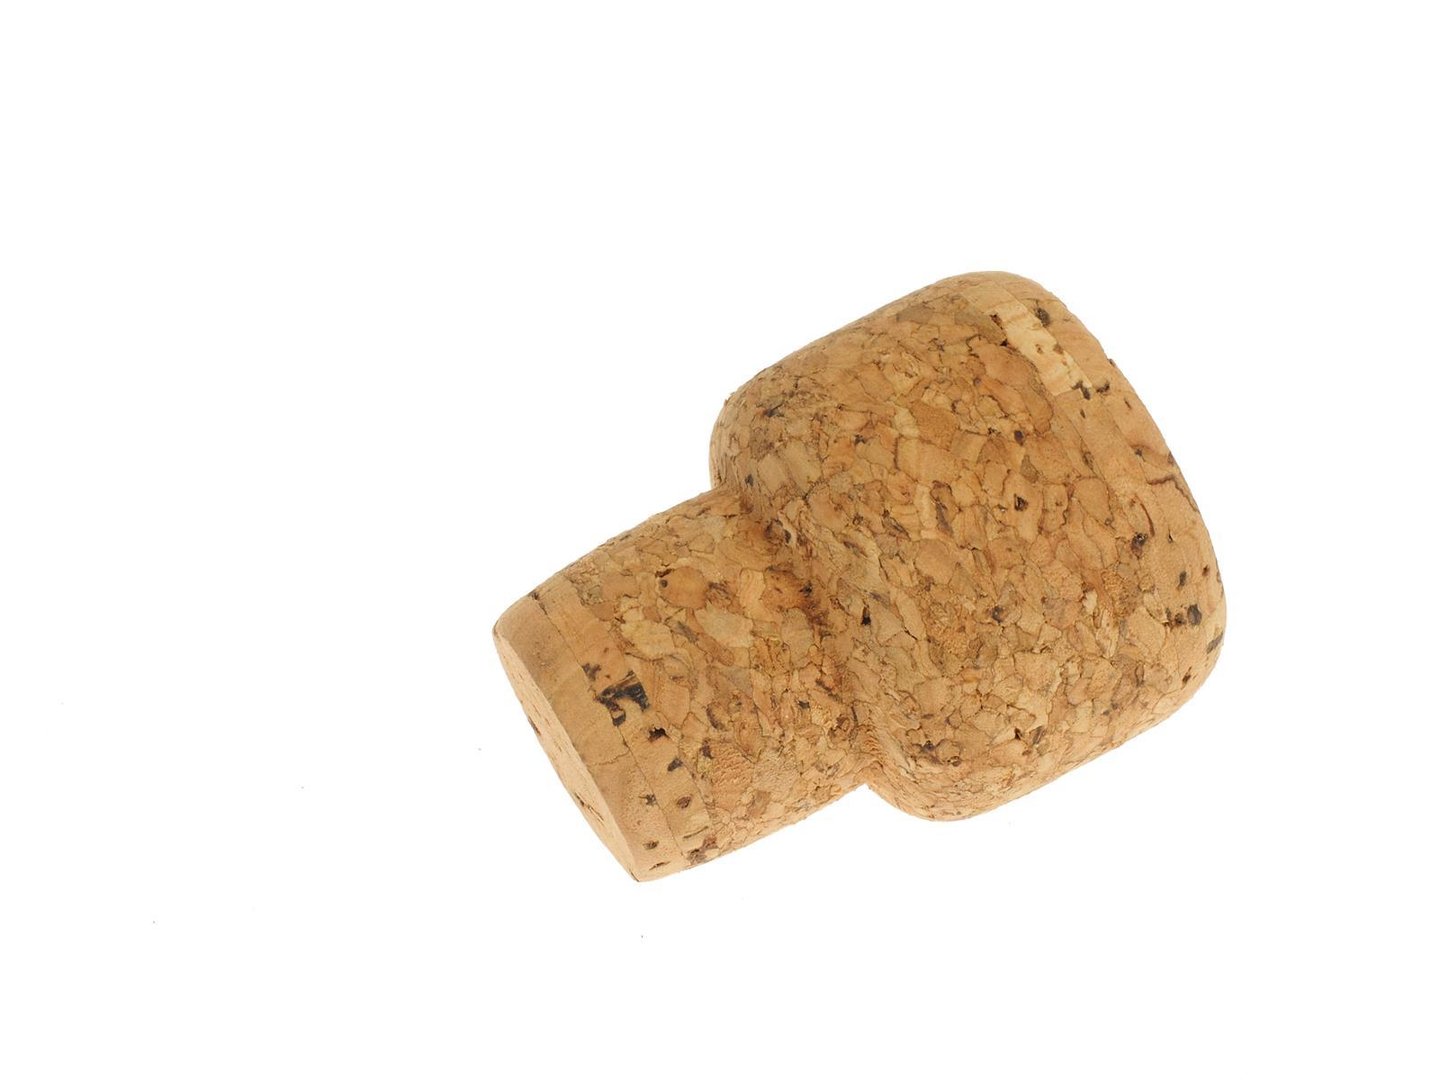 7490 X L Mushroom cork From pressed cork